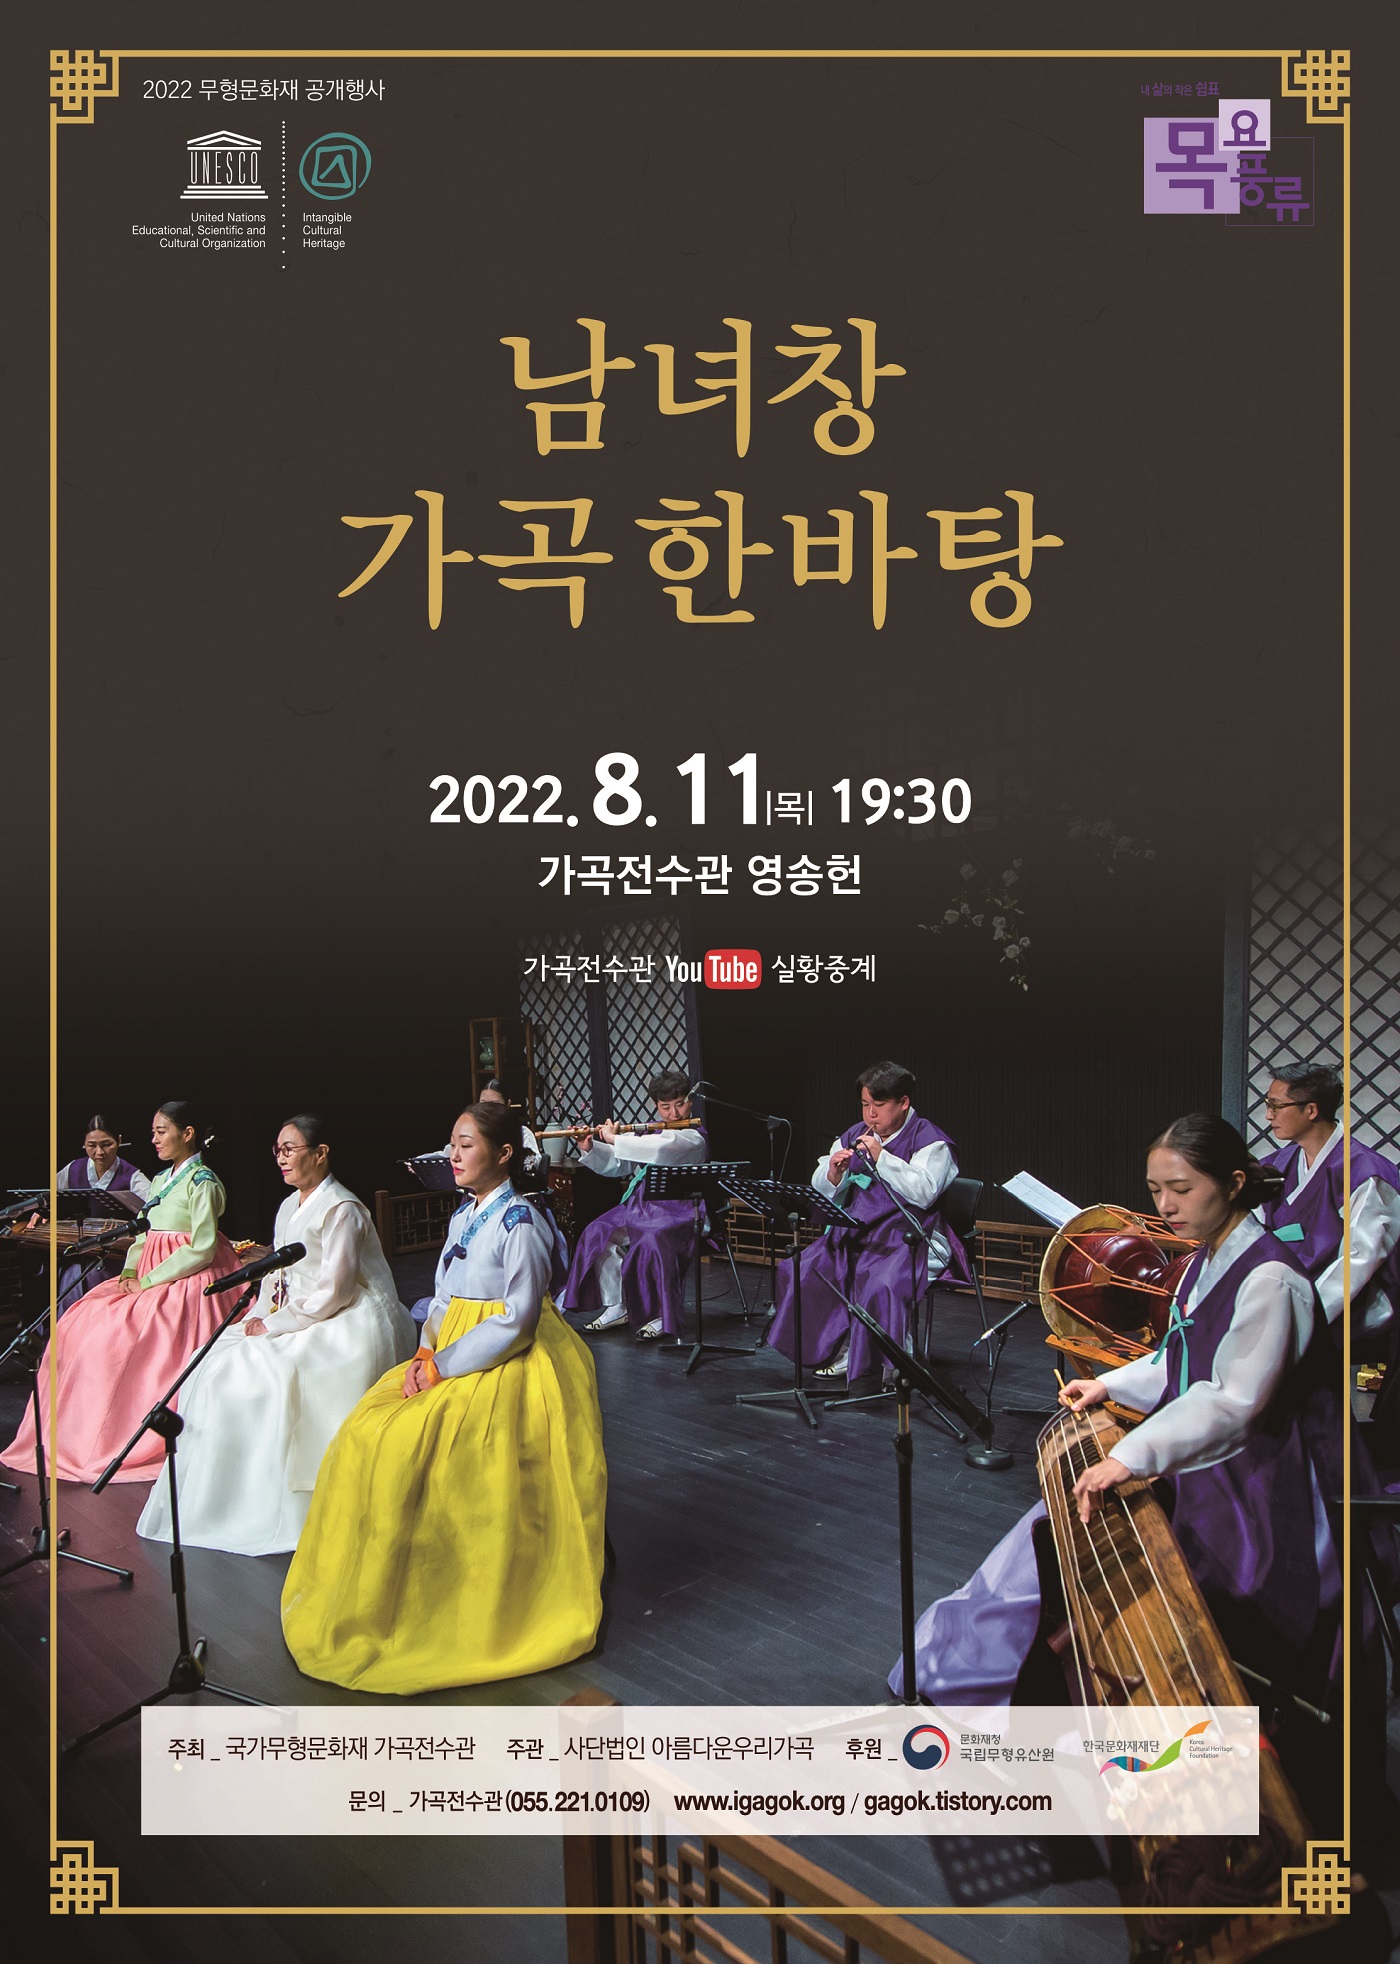 2022 무형문화재 공개행사 '남녀창 가곡한바탕' 포스터